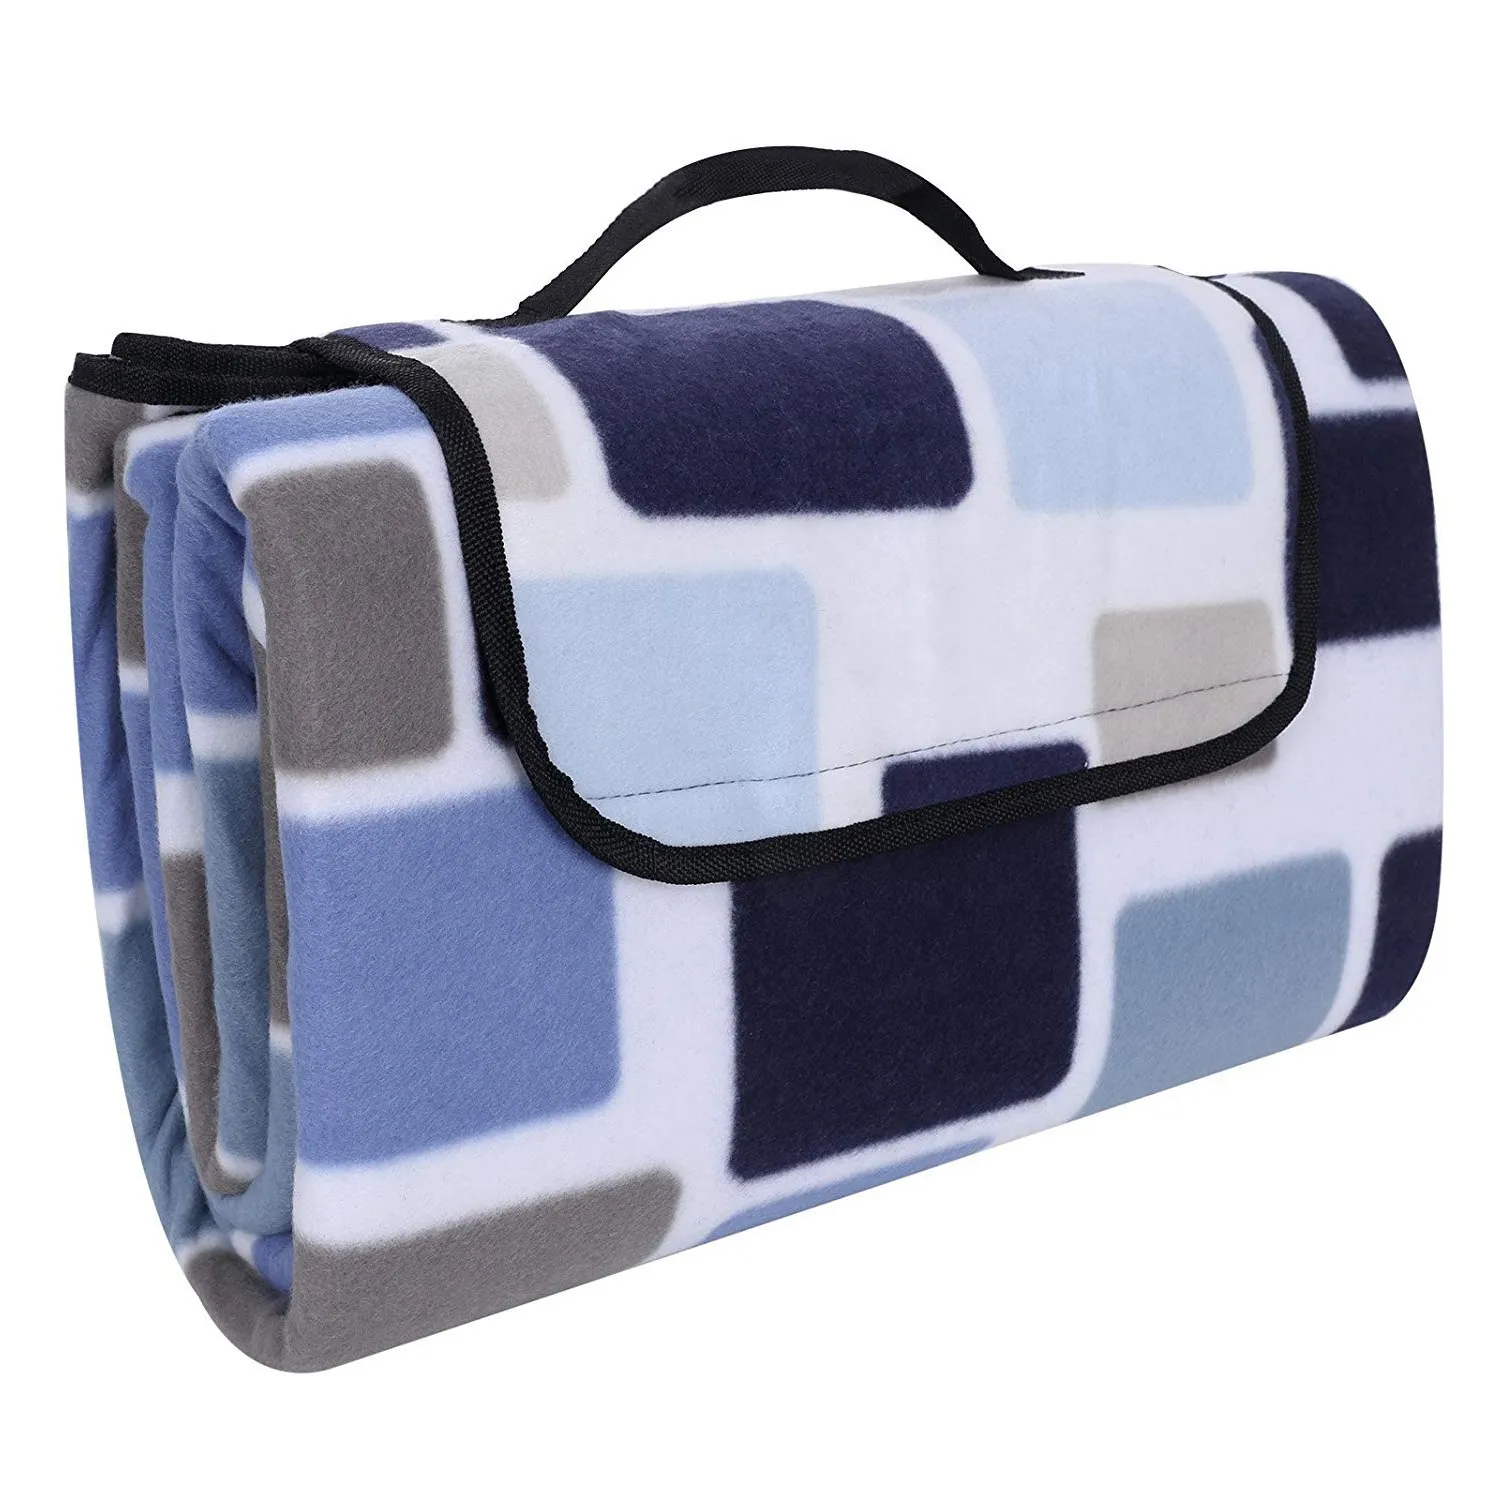 ELOS-одеяло для пикника, 200x200 см, размер XXL, Фланелевое, теплоизолированное, водонепроницаемое, с ручкой для переноски